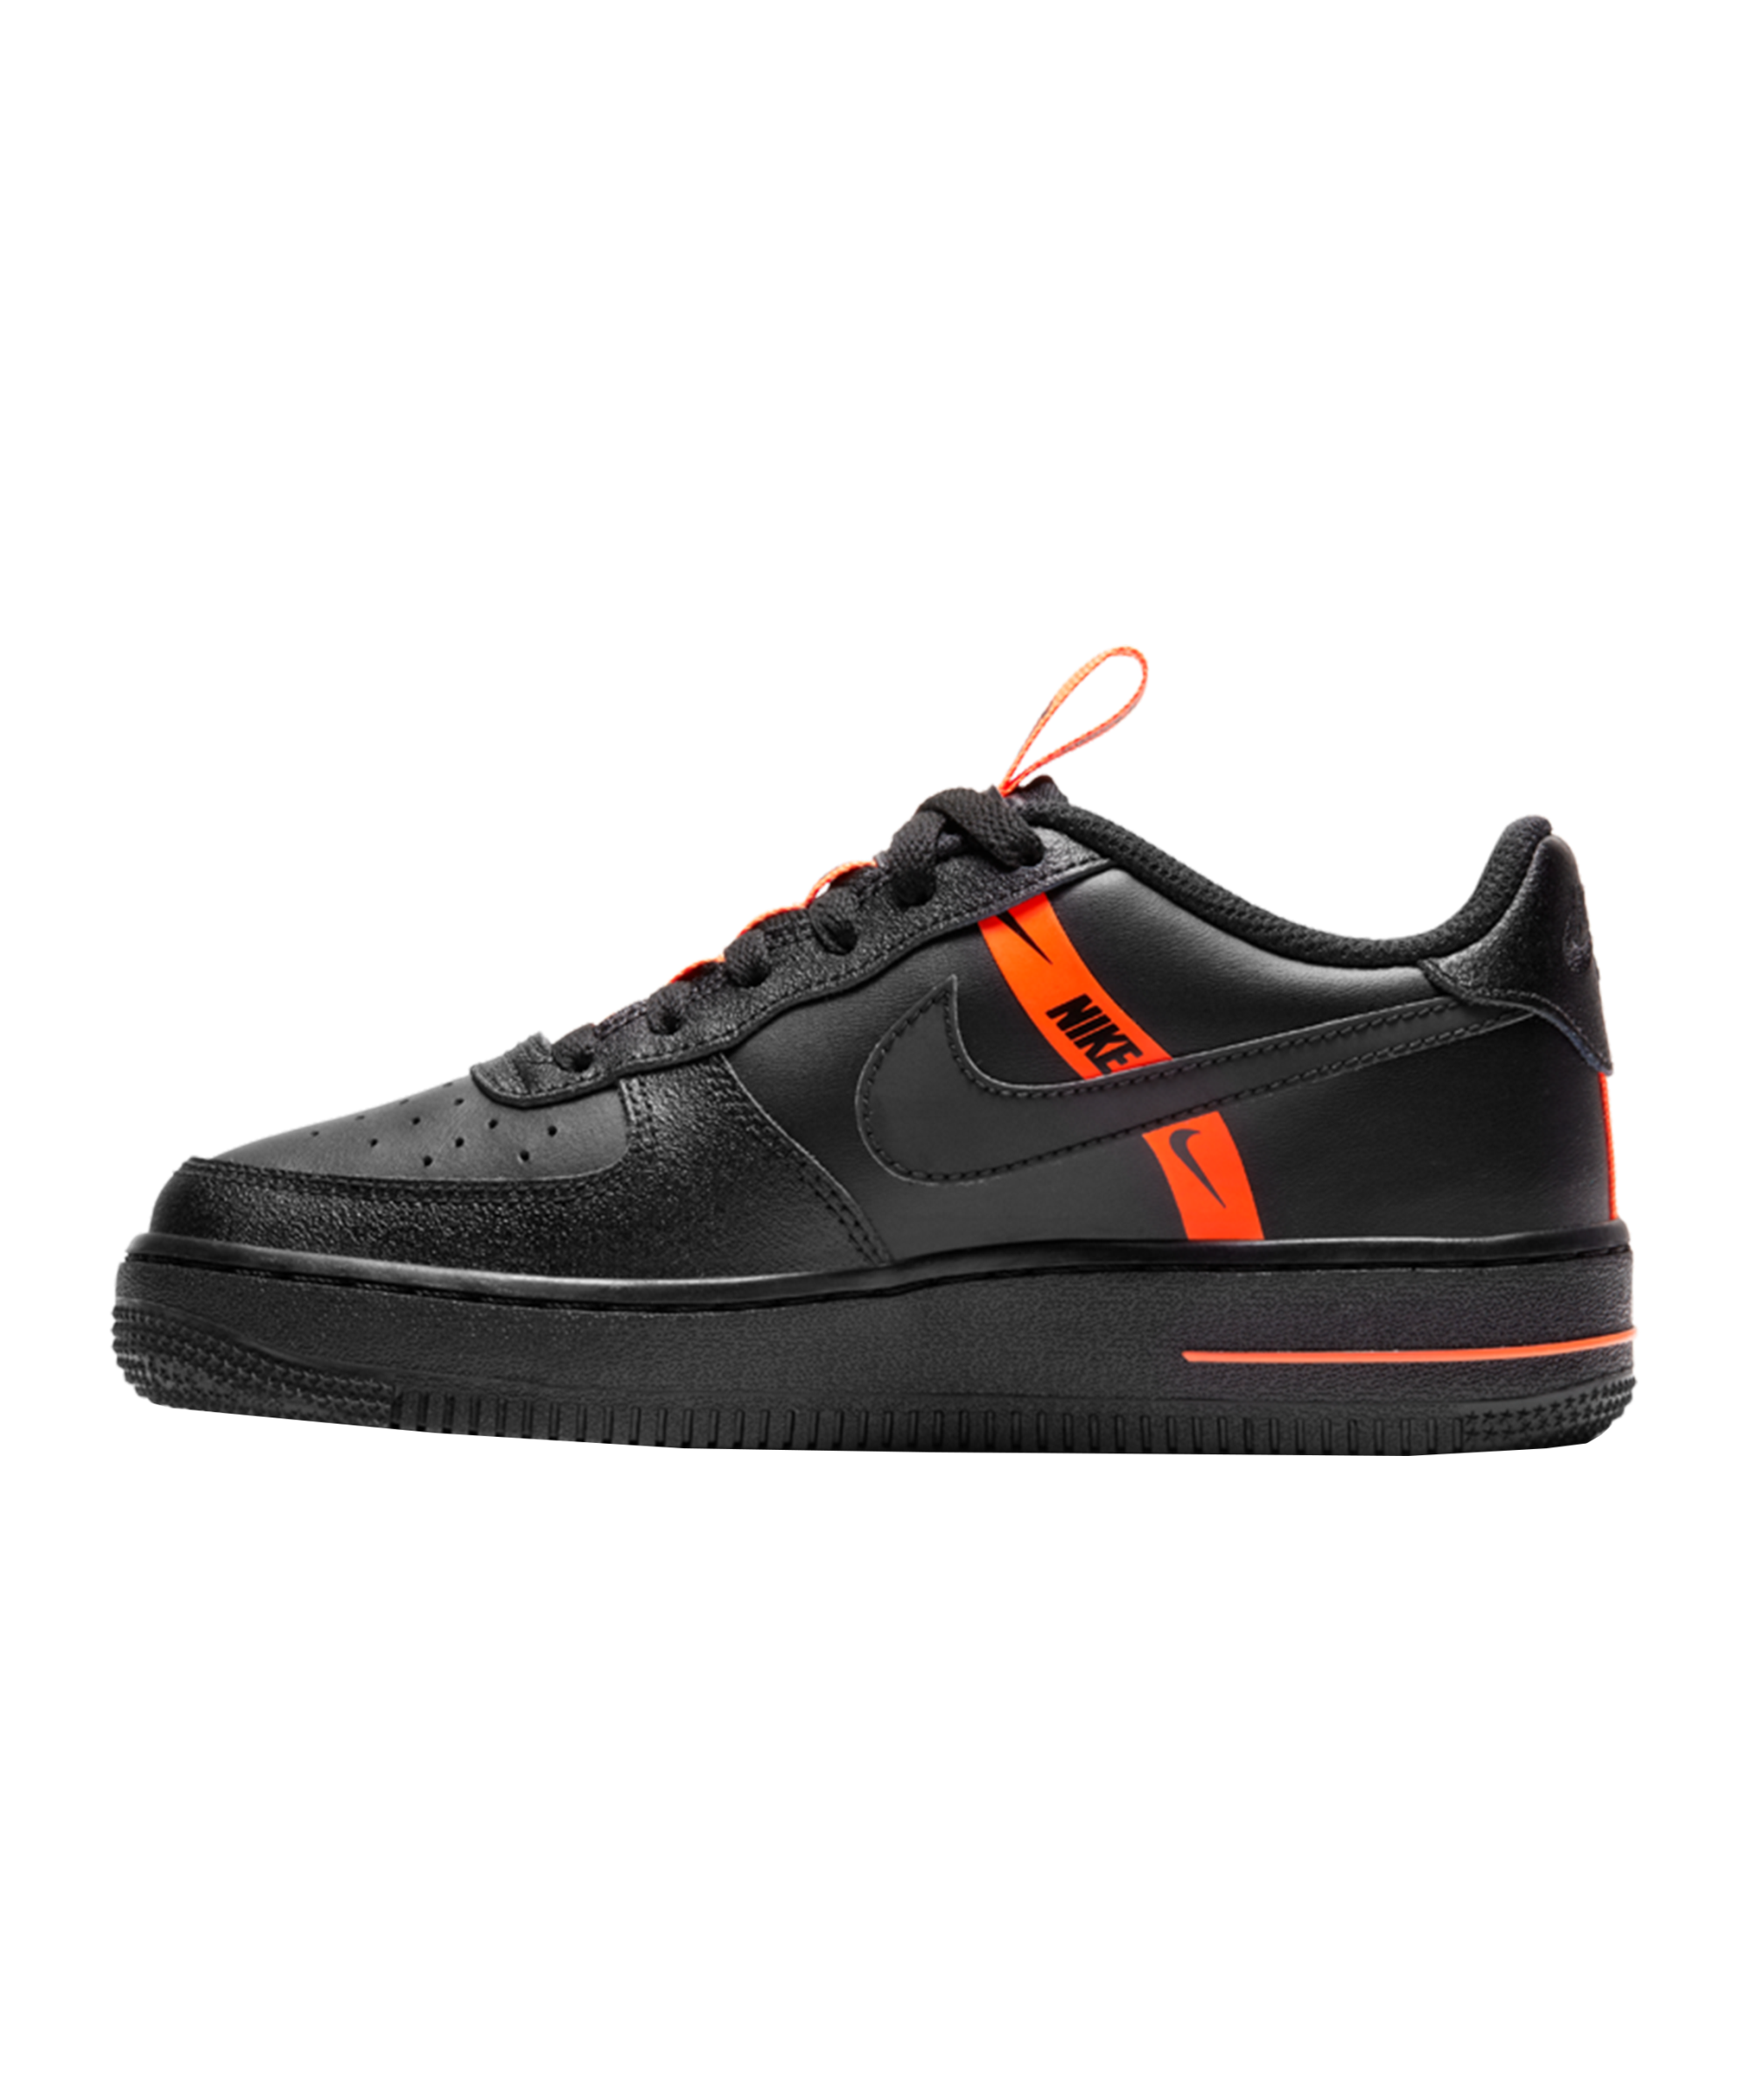 Shoes Nike Force 1 LV8 KSA (PS) 